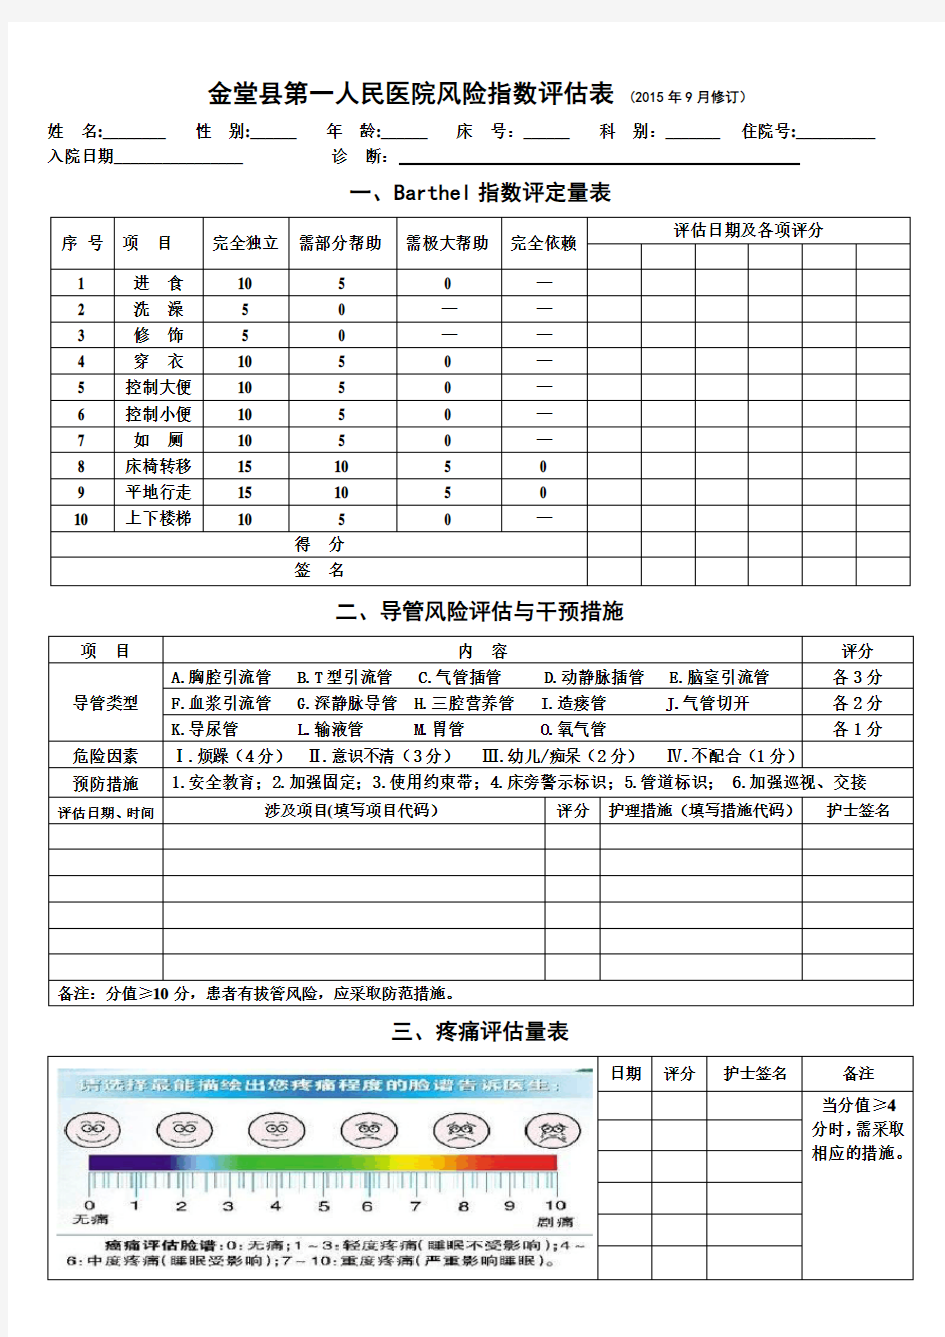 金堂县第一人民医院风险指数评估表